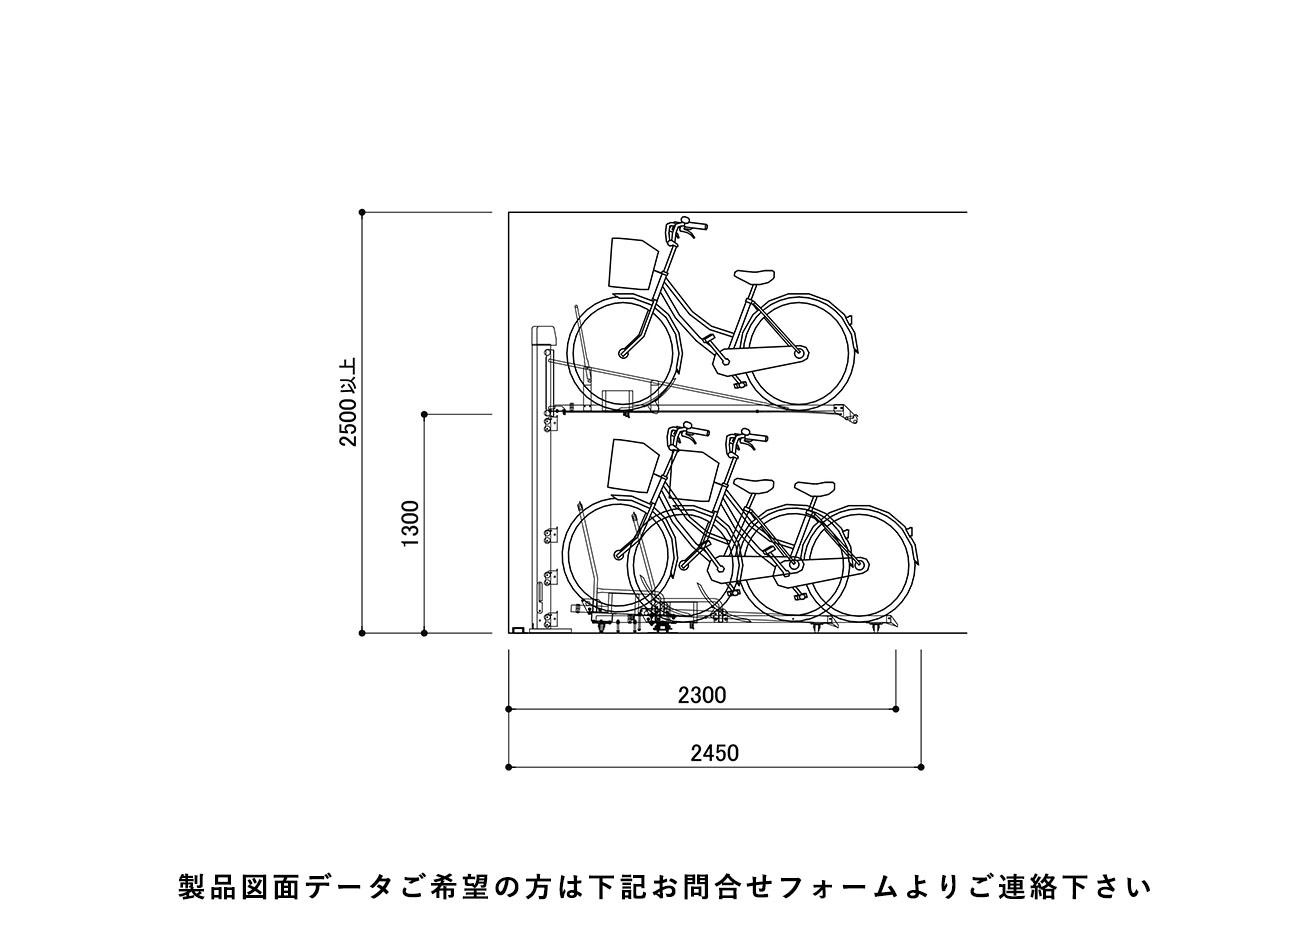 垂直2段式駐輪機：SD-SV2の駐輪場断面図。